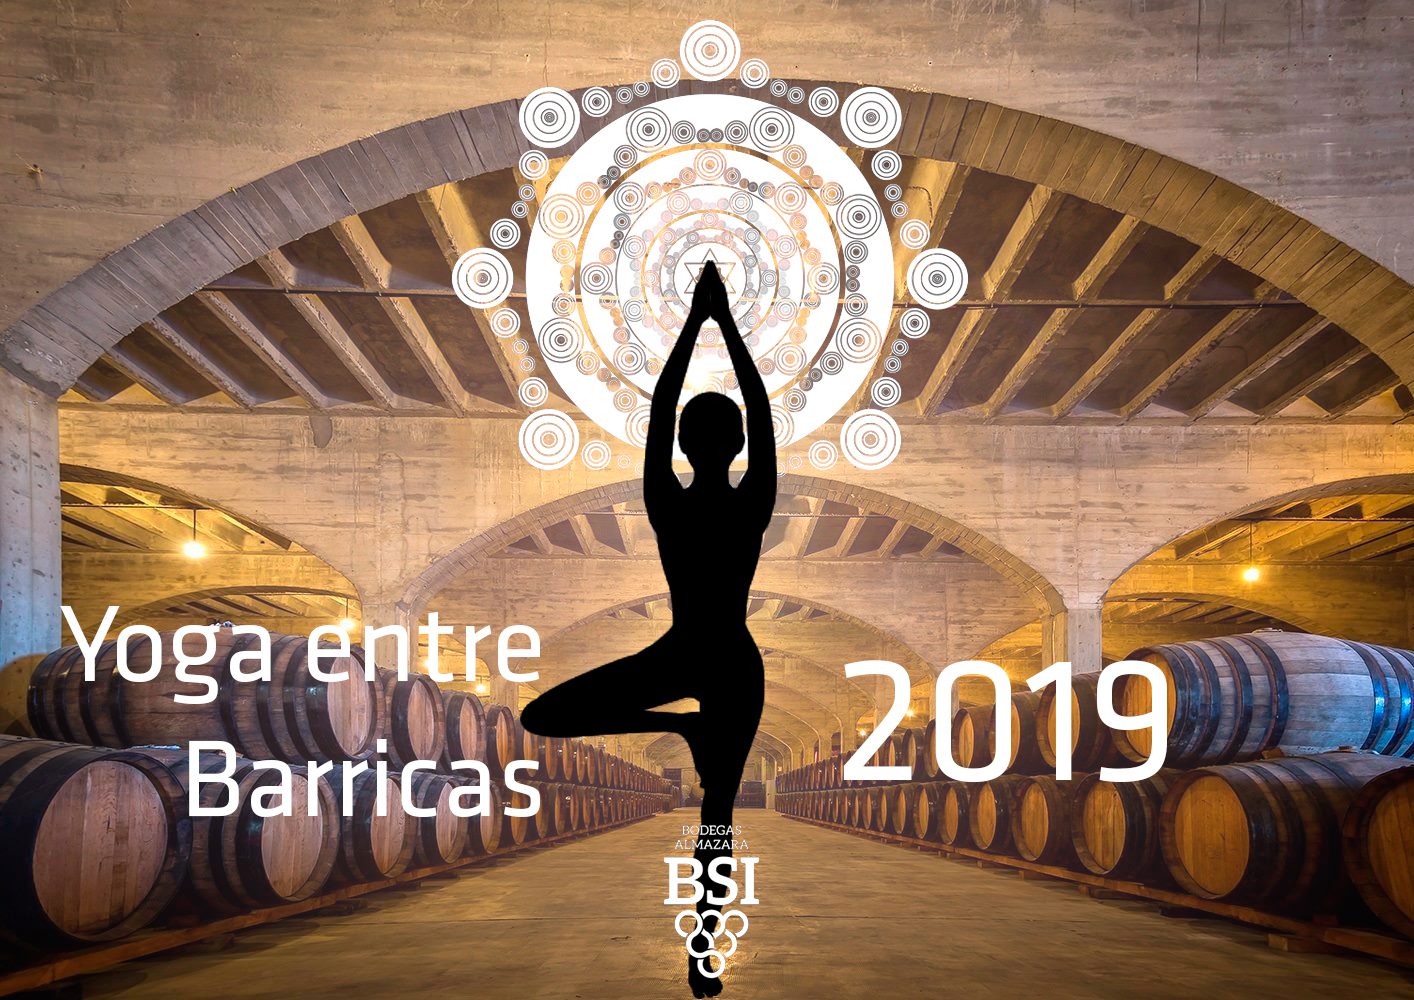 BSI vuelve con “Yoga entre barricas” los jueves de febrero, marzo y abril